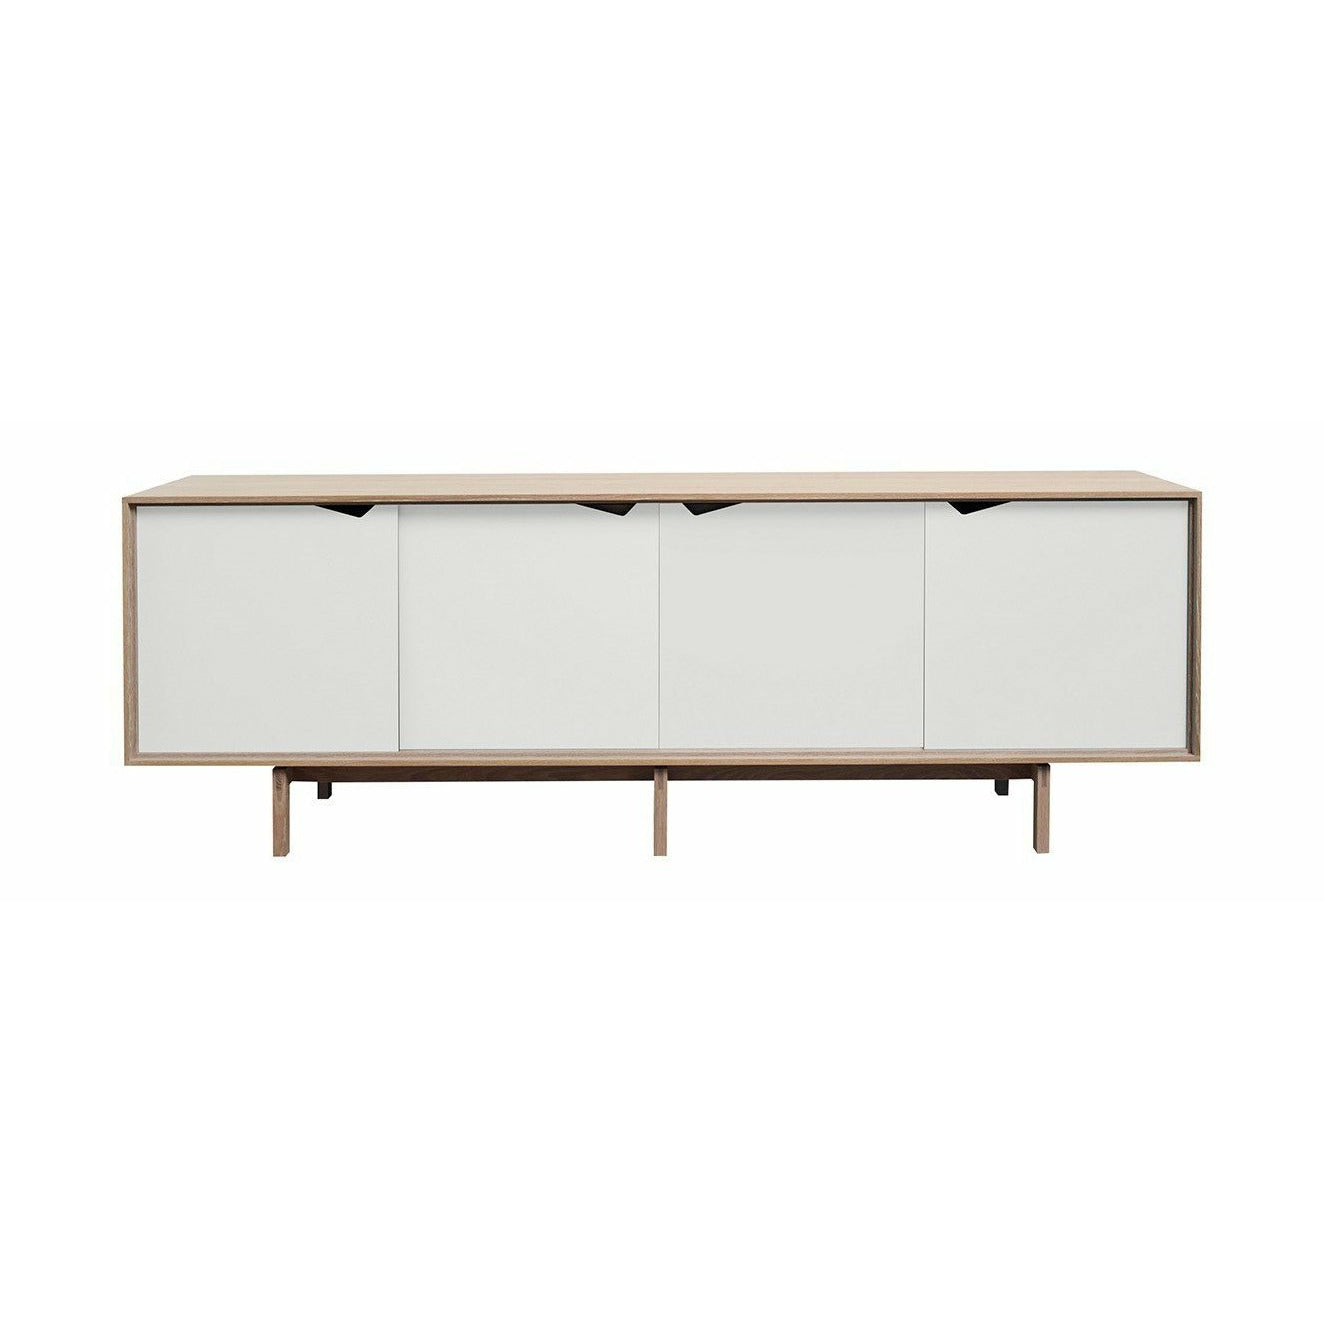 Andersen Furniture S1 Sideboard tvålad ek, vita lådor, 200 cm